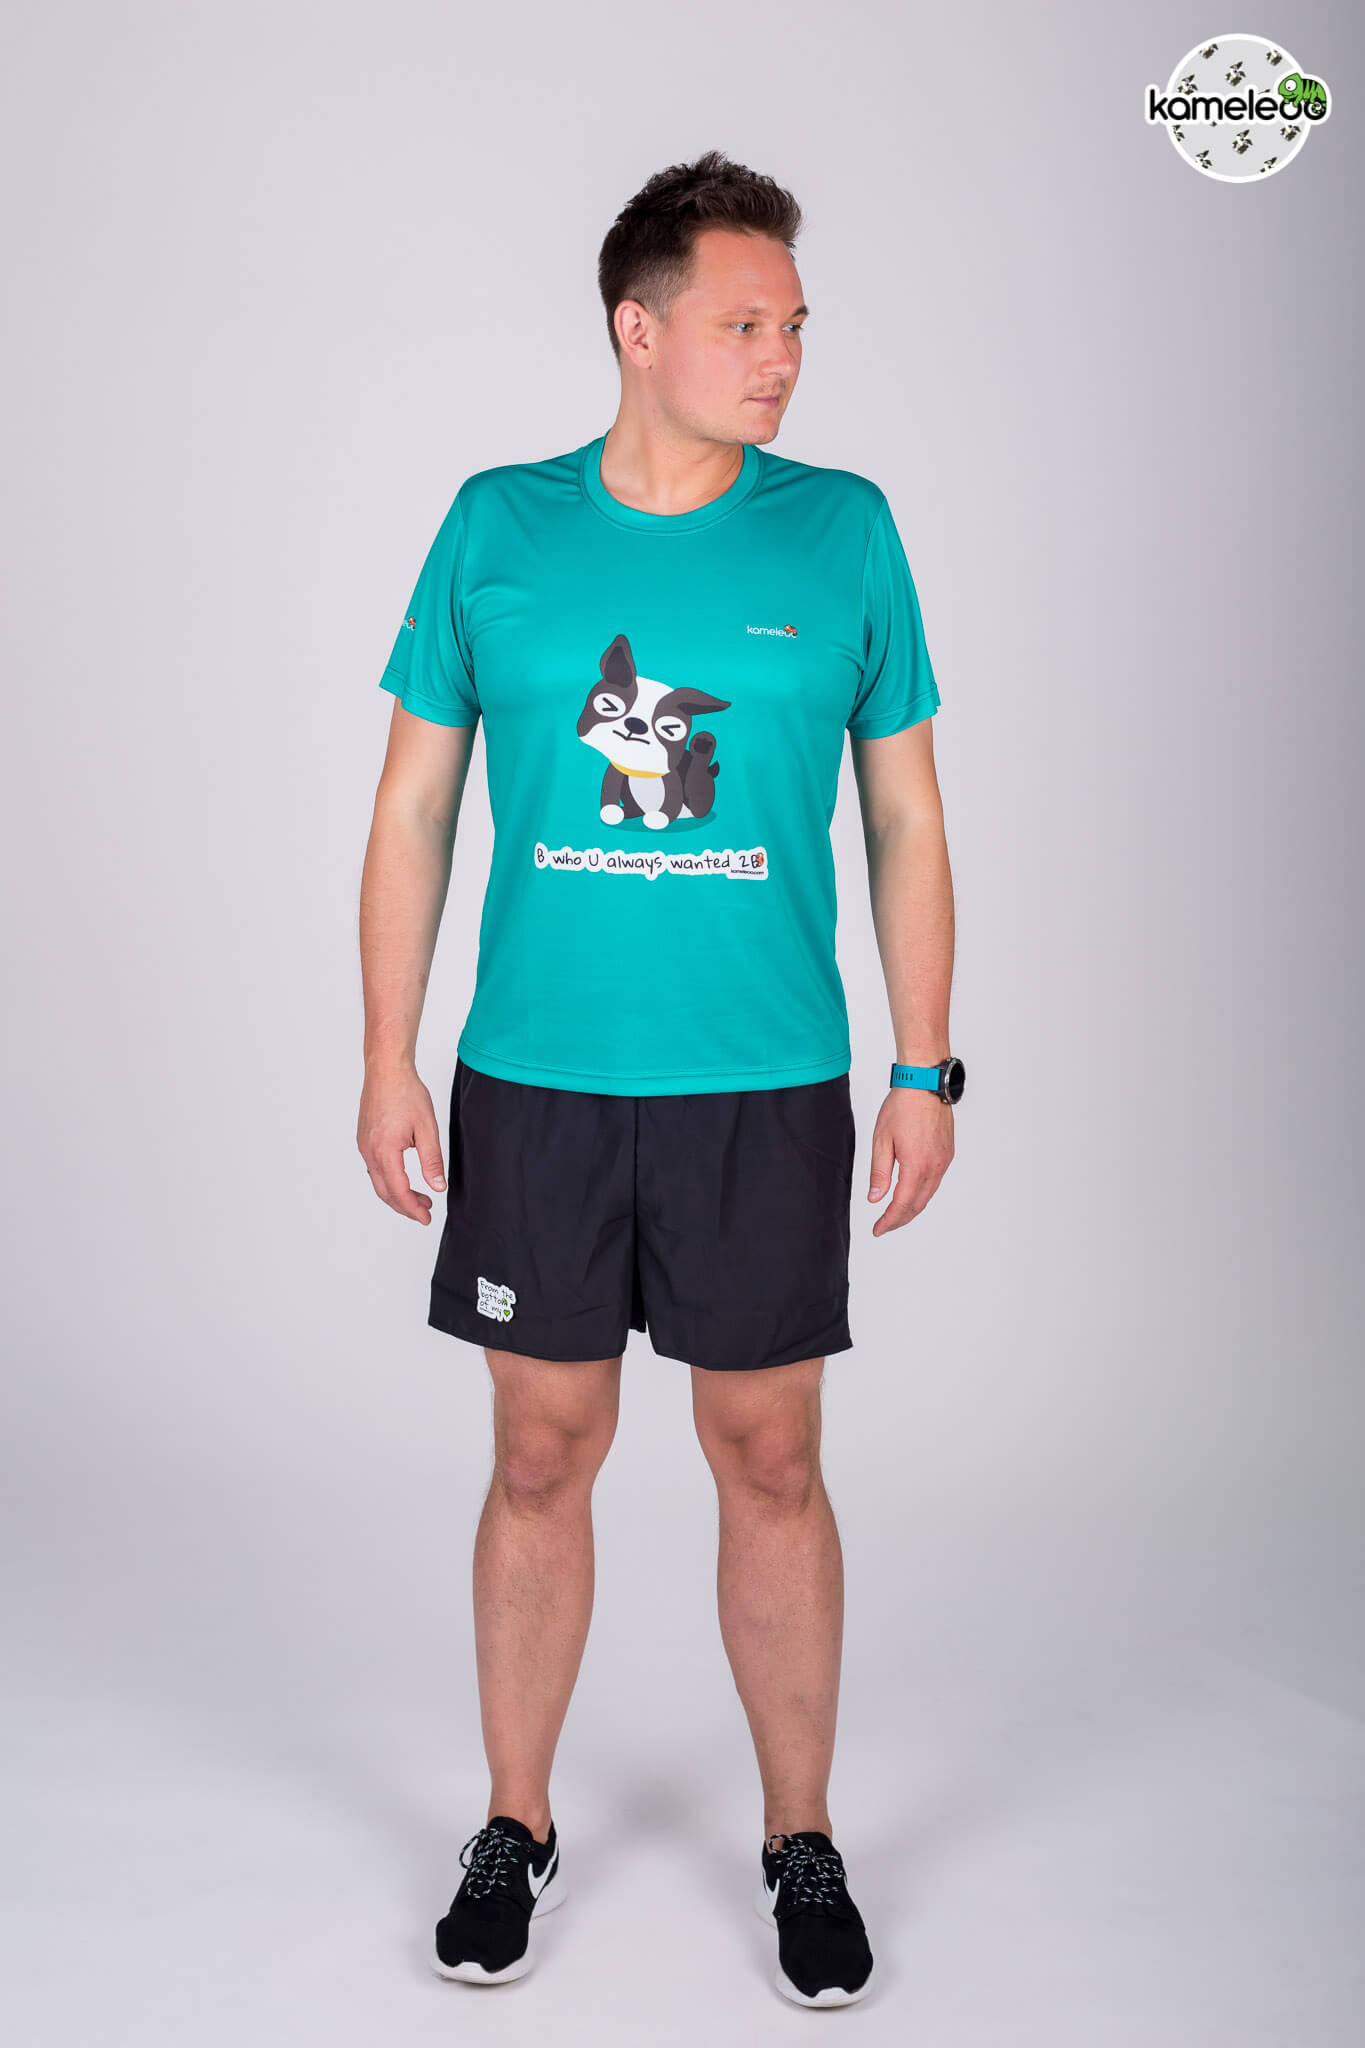 Bostoon Men's T-shirt - Turquoise - Kameleoo.com